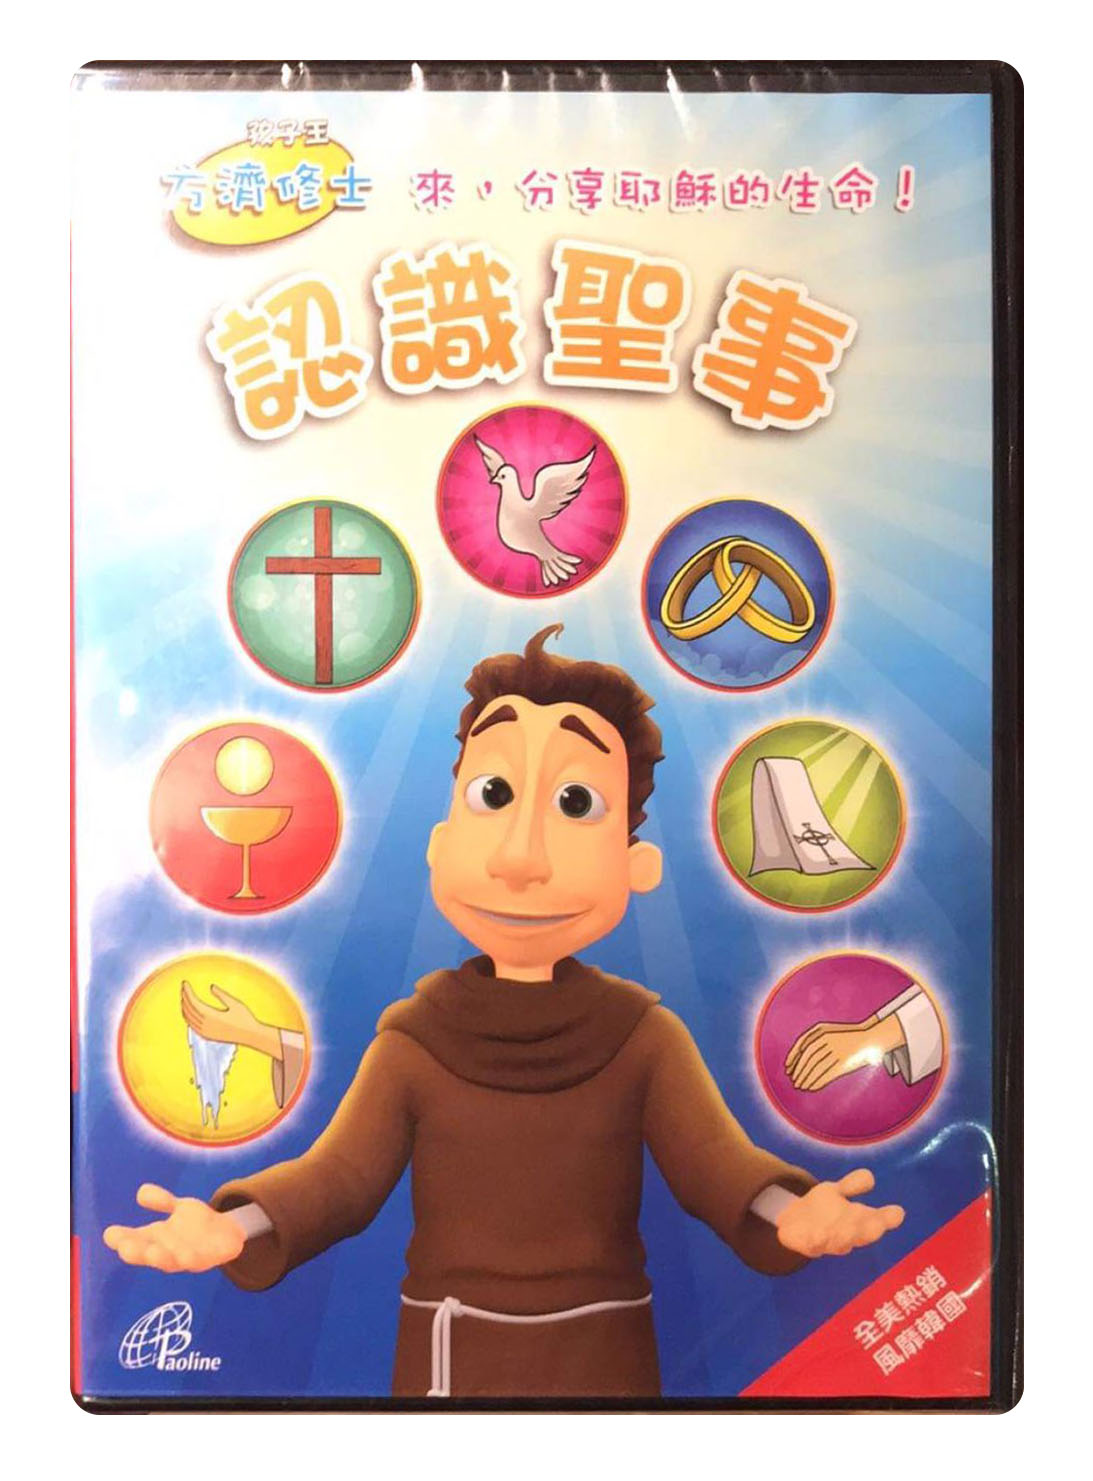 「認識聖事」國語DVD